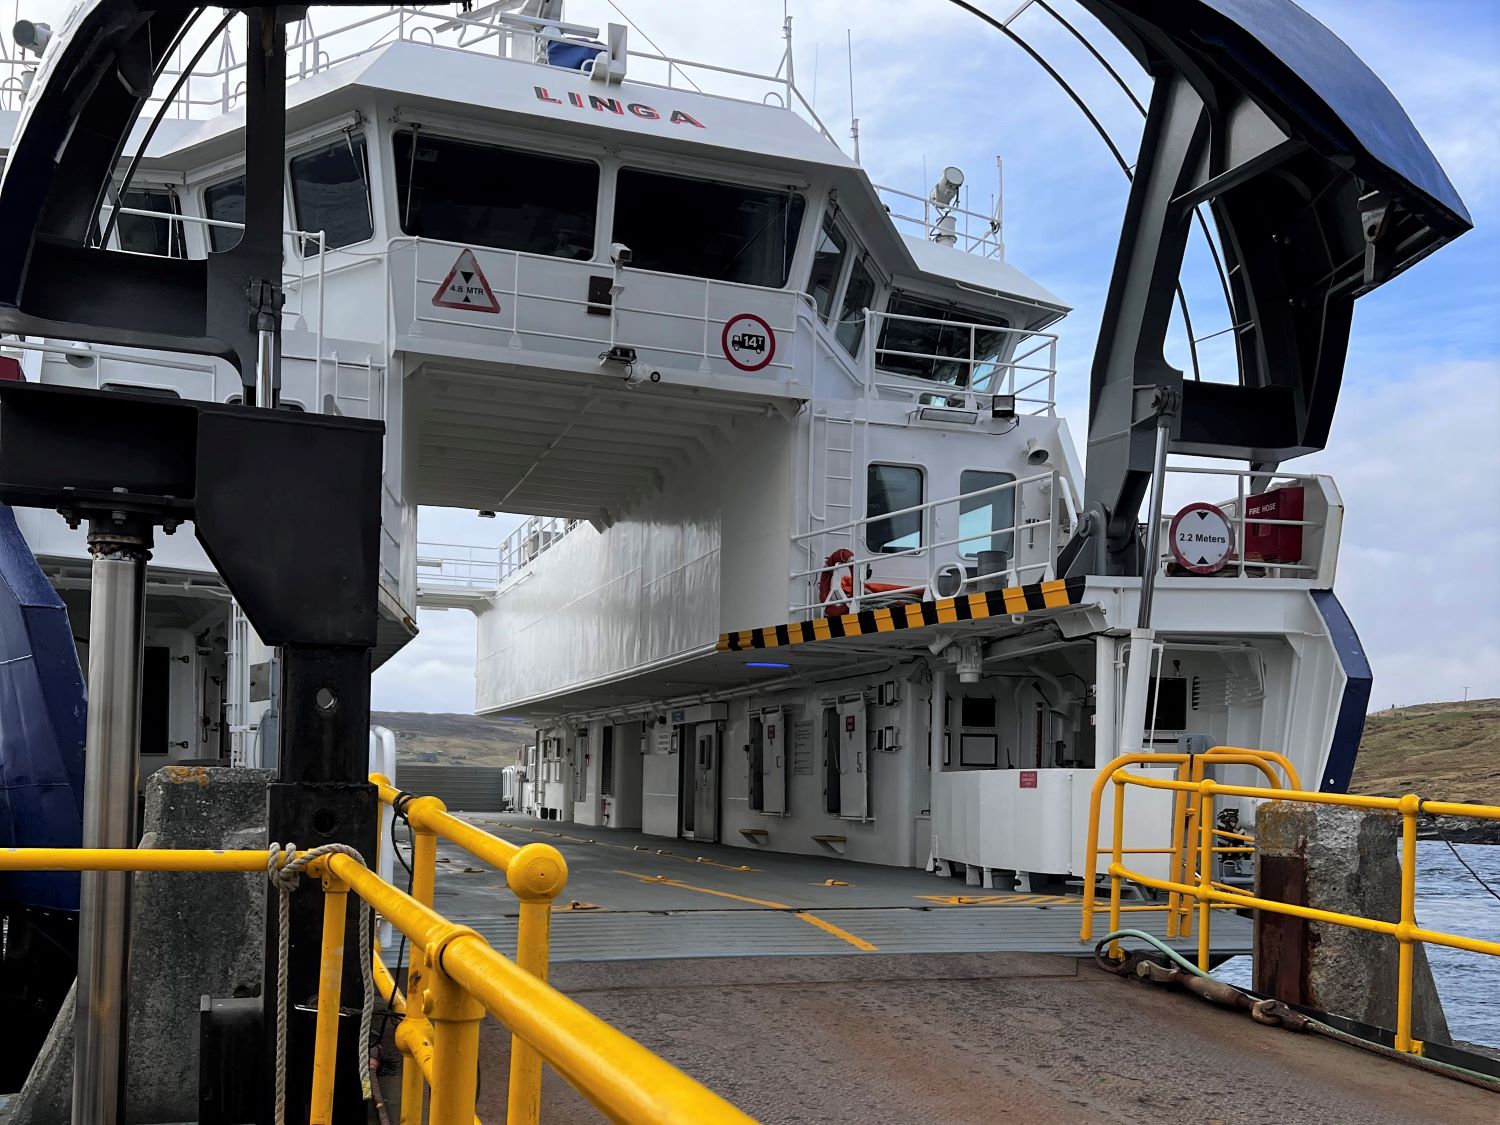 Laxo ferry terminal